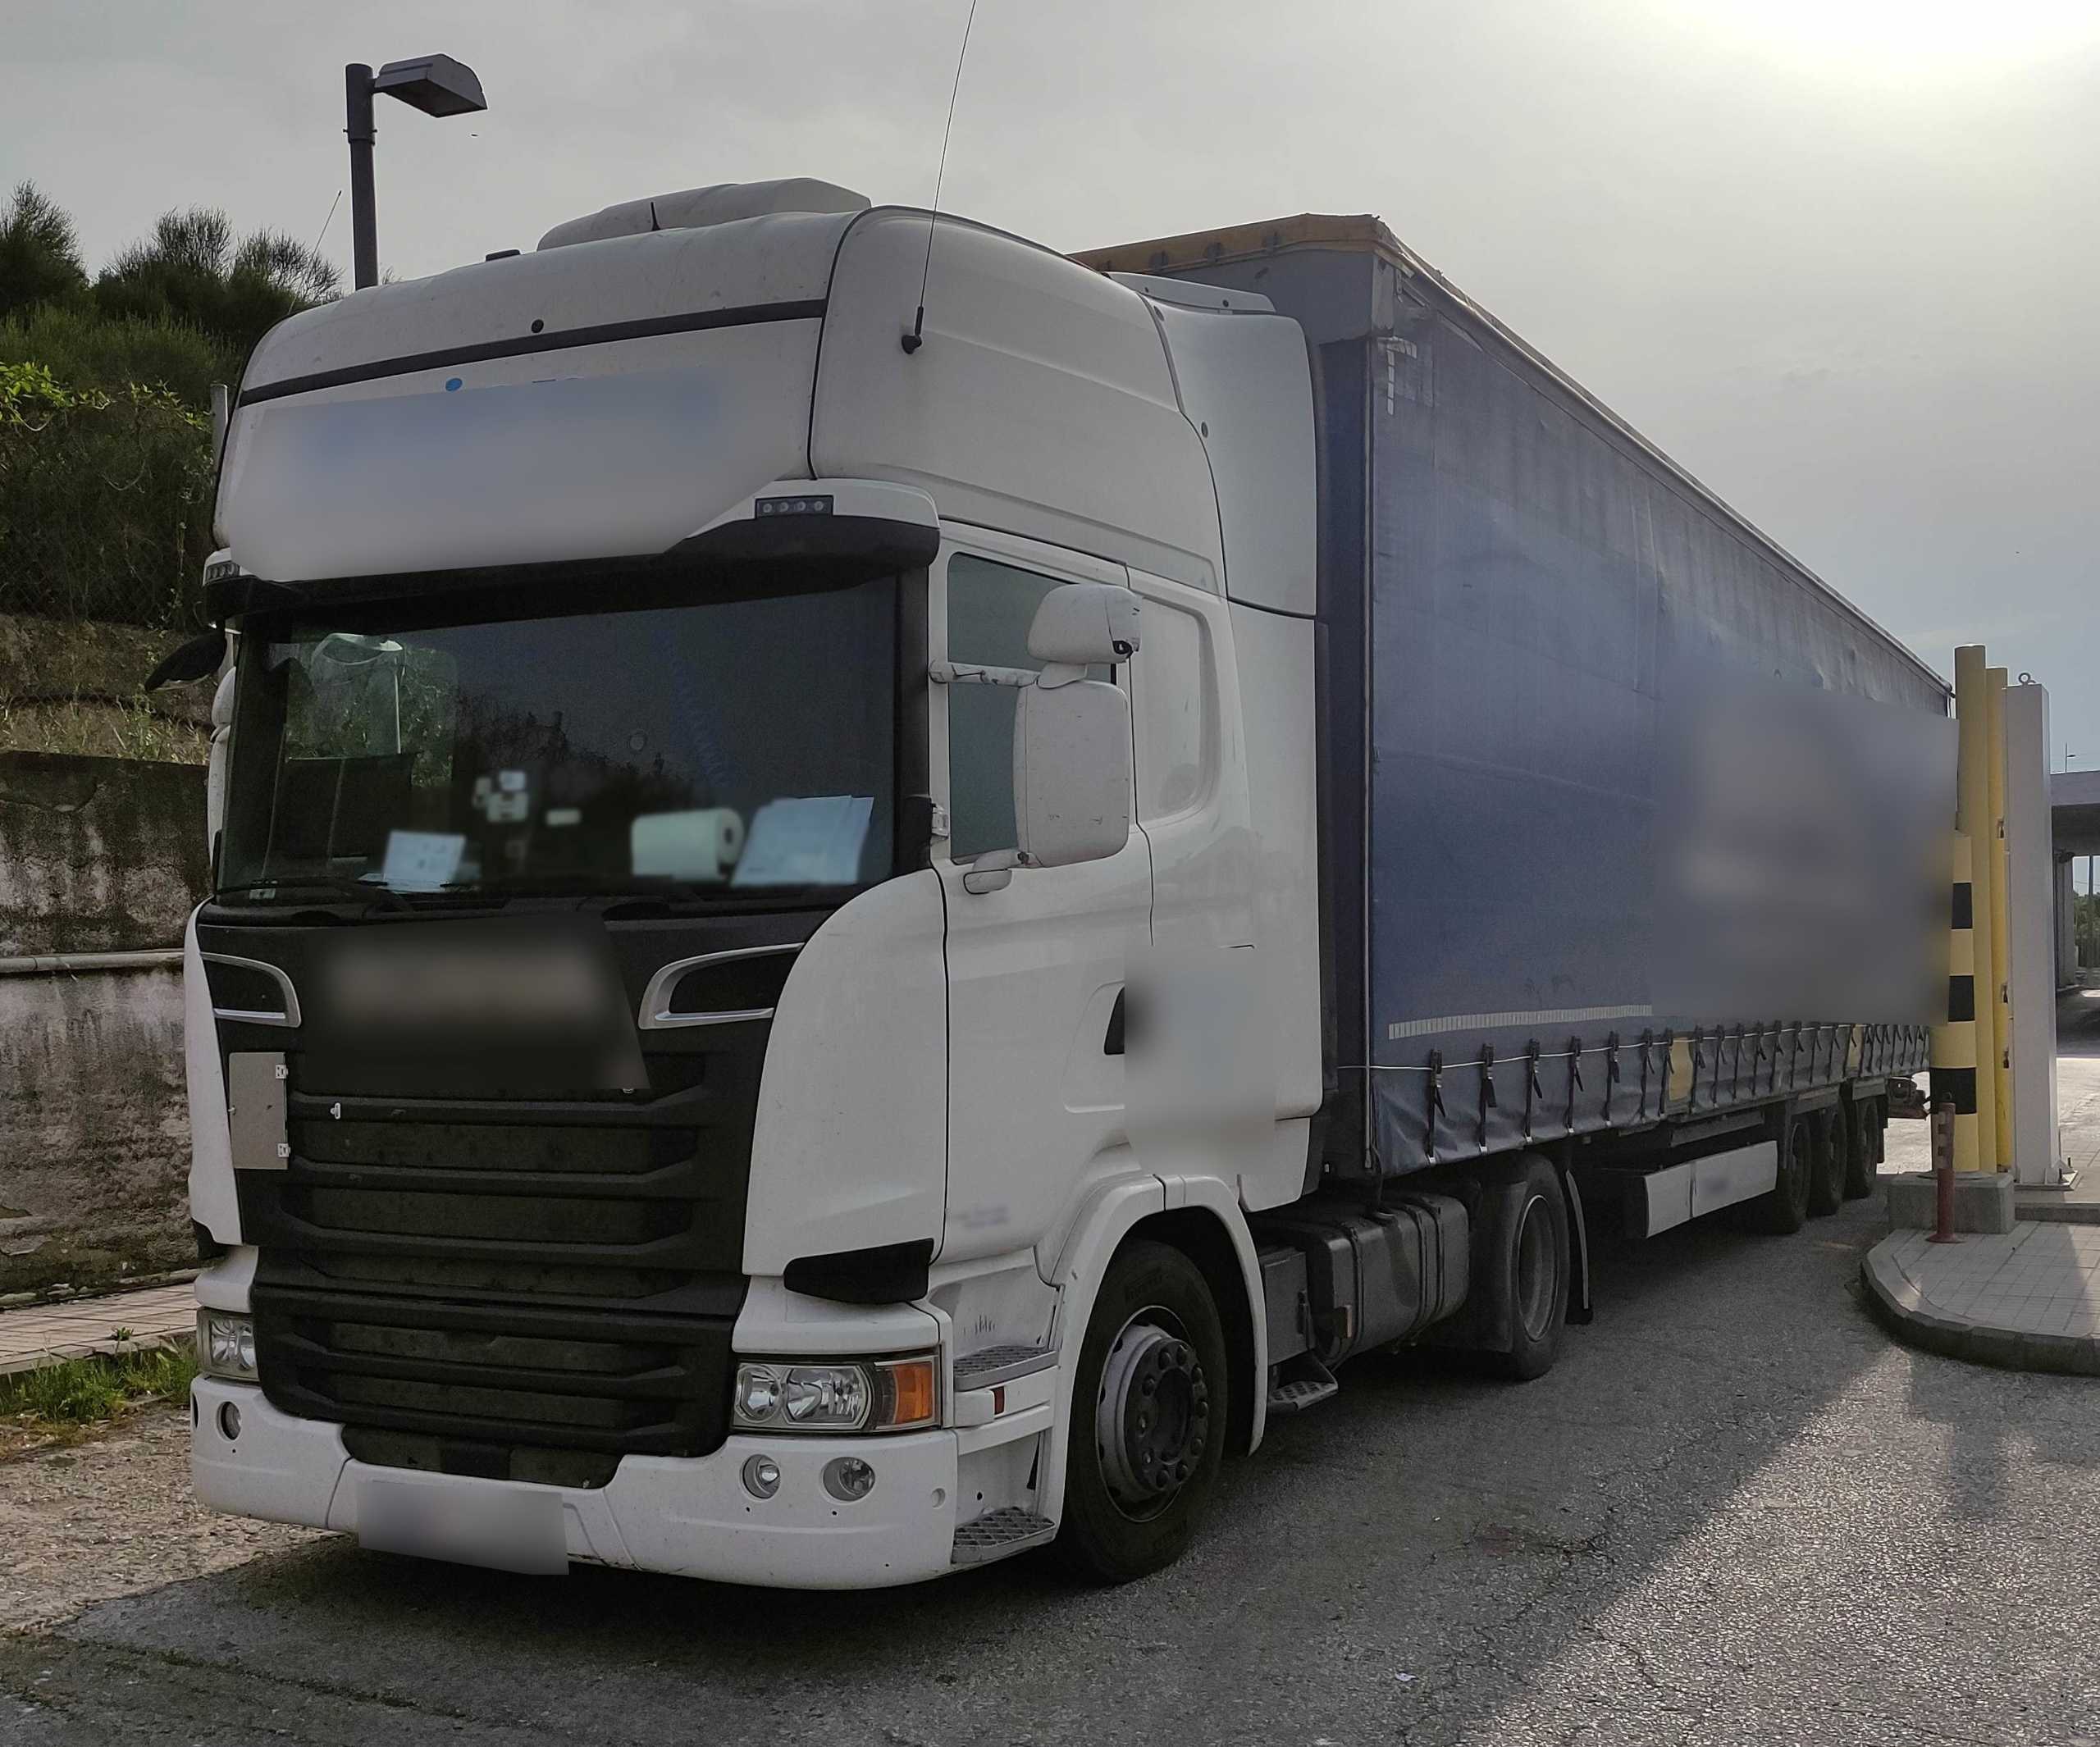 Θεσσαλονίκη: Δείτε πώς βρέθηκαν κρυμμένοι 6 μετανάστες μέσα σε αυτό το φορτηγό στο τελωνείο